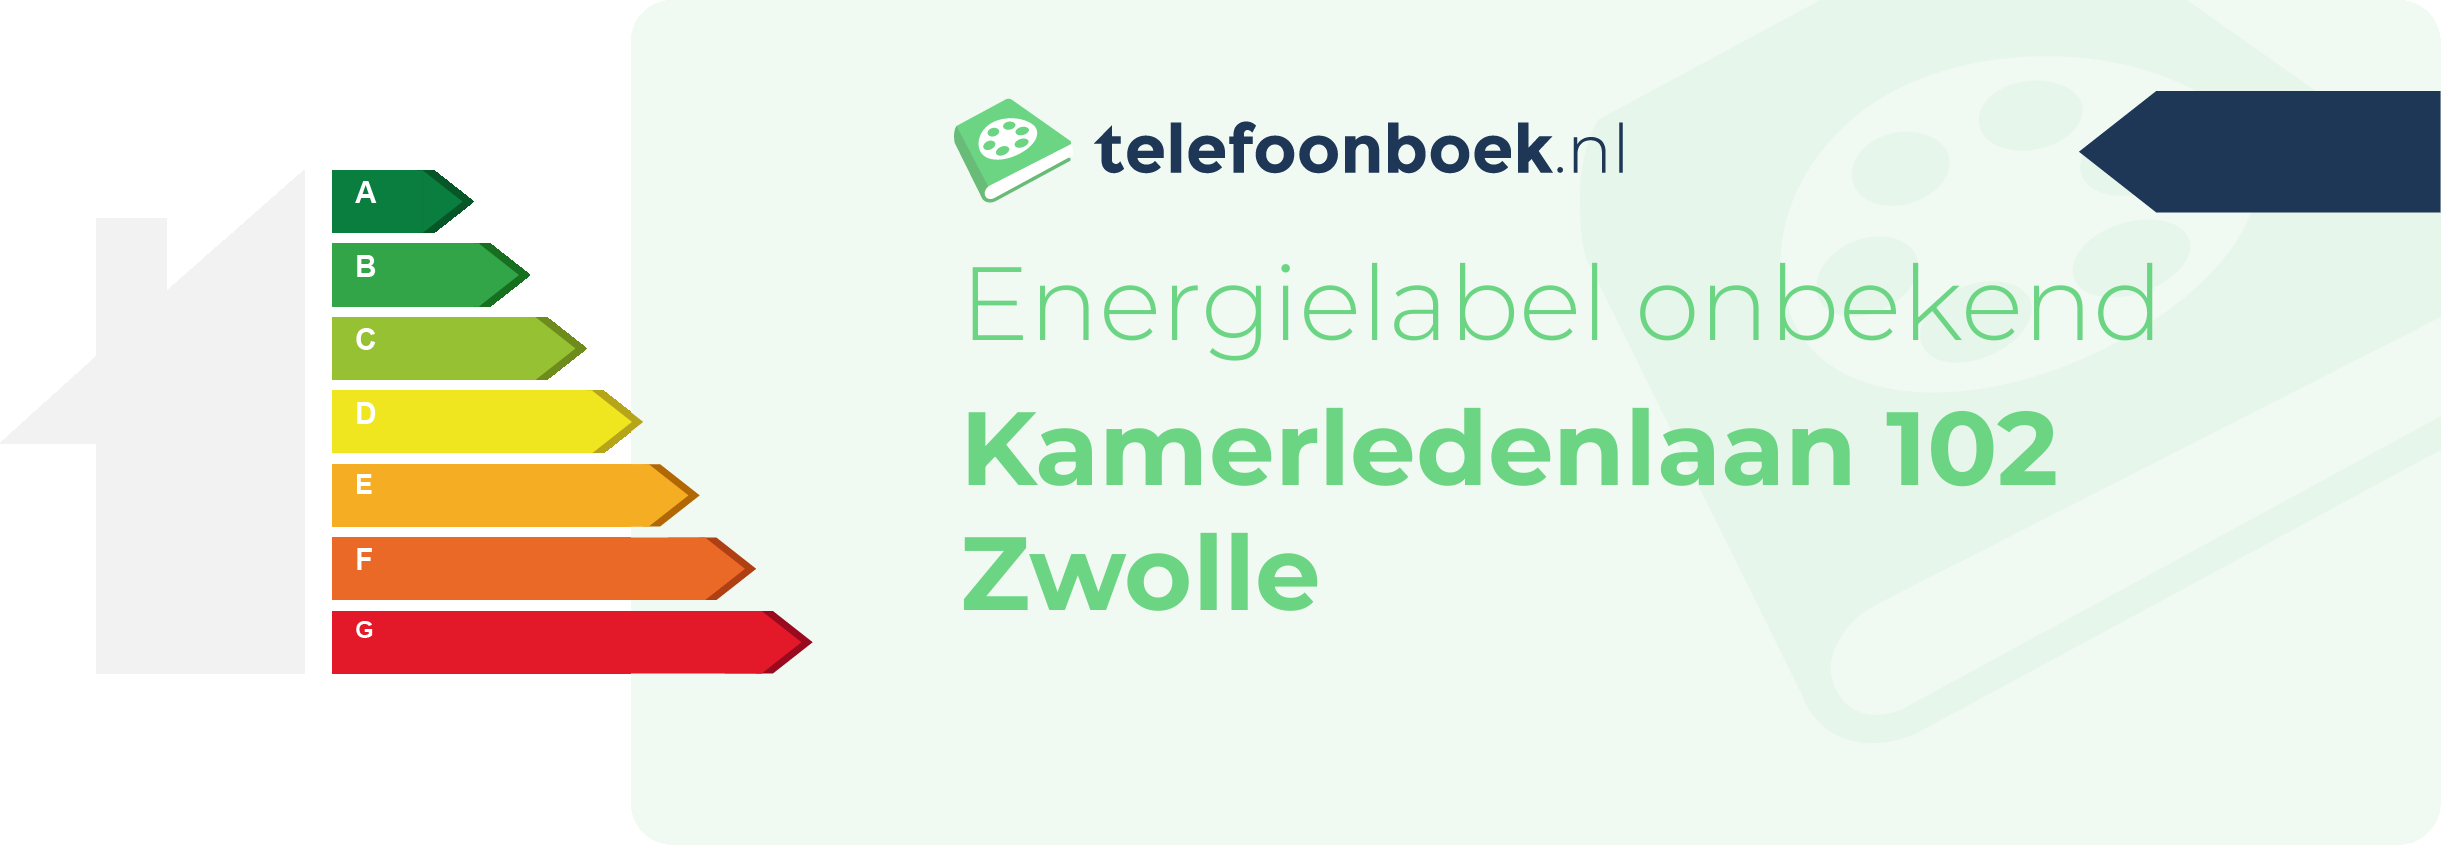 Energielabel Kamerledenlaan 102 Zwolle